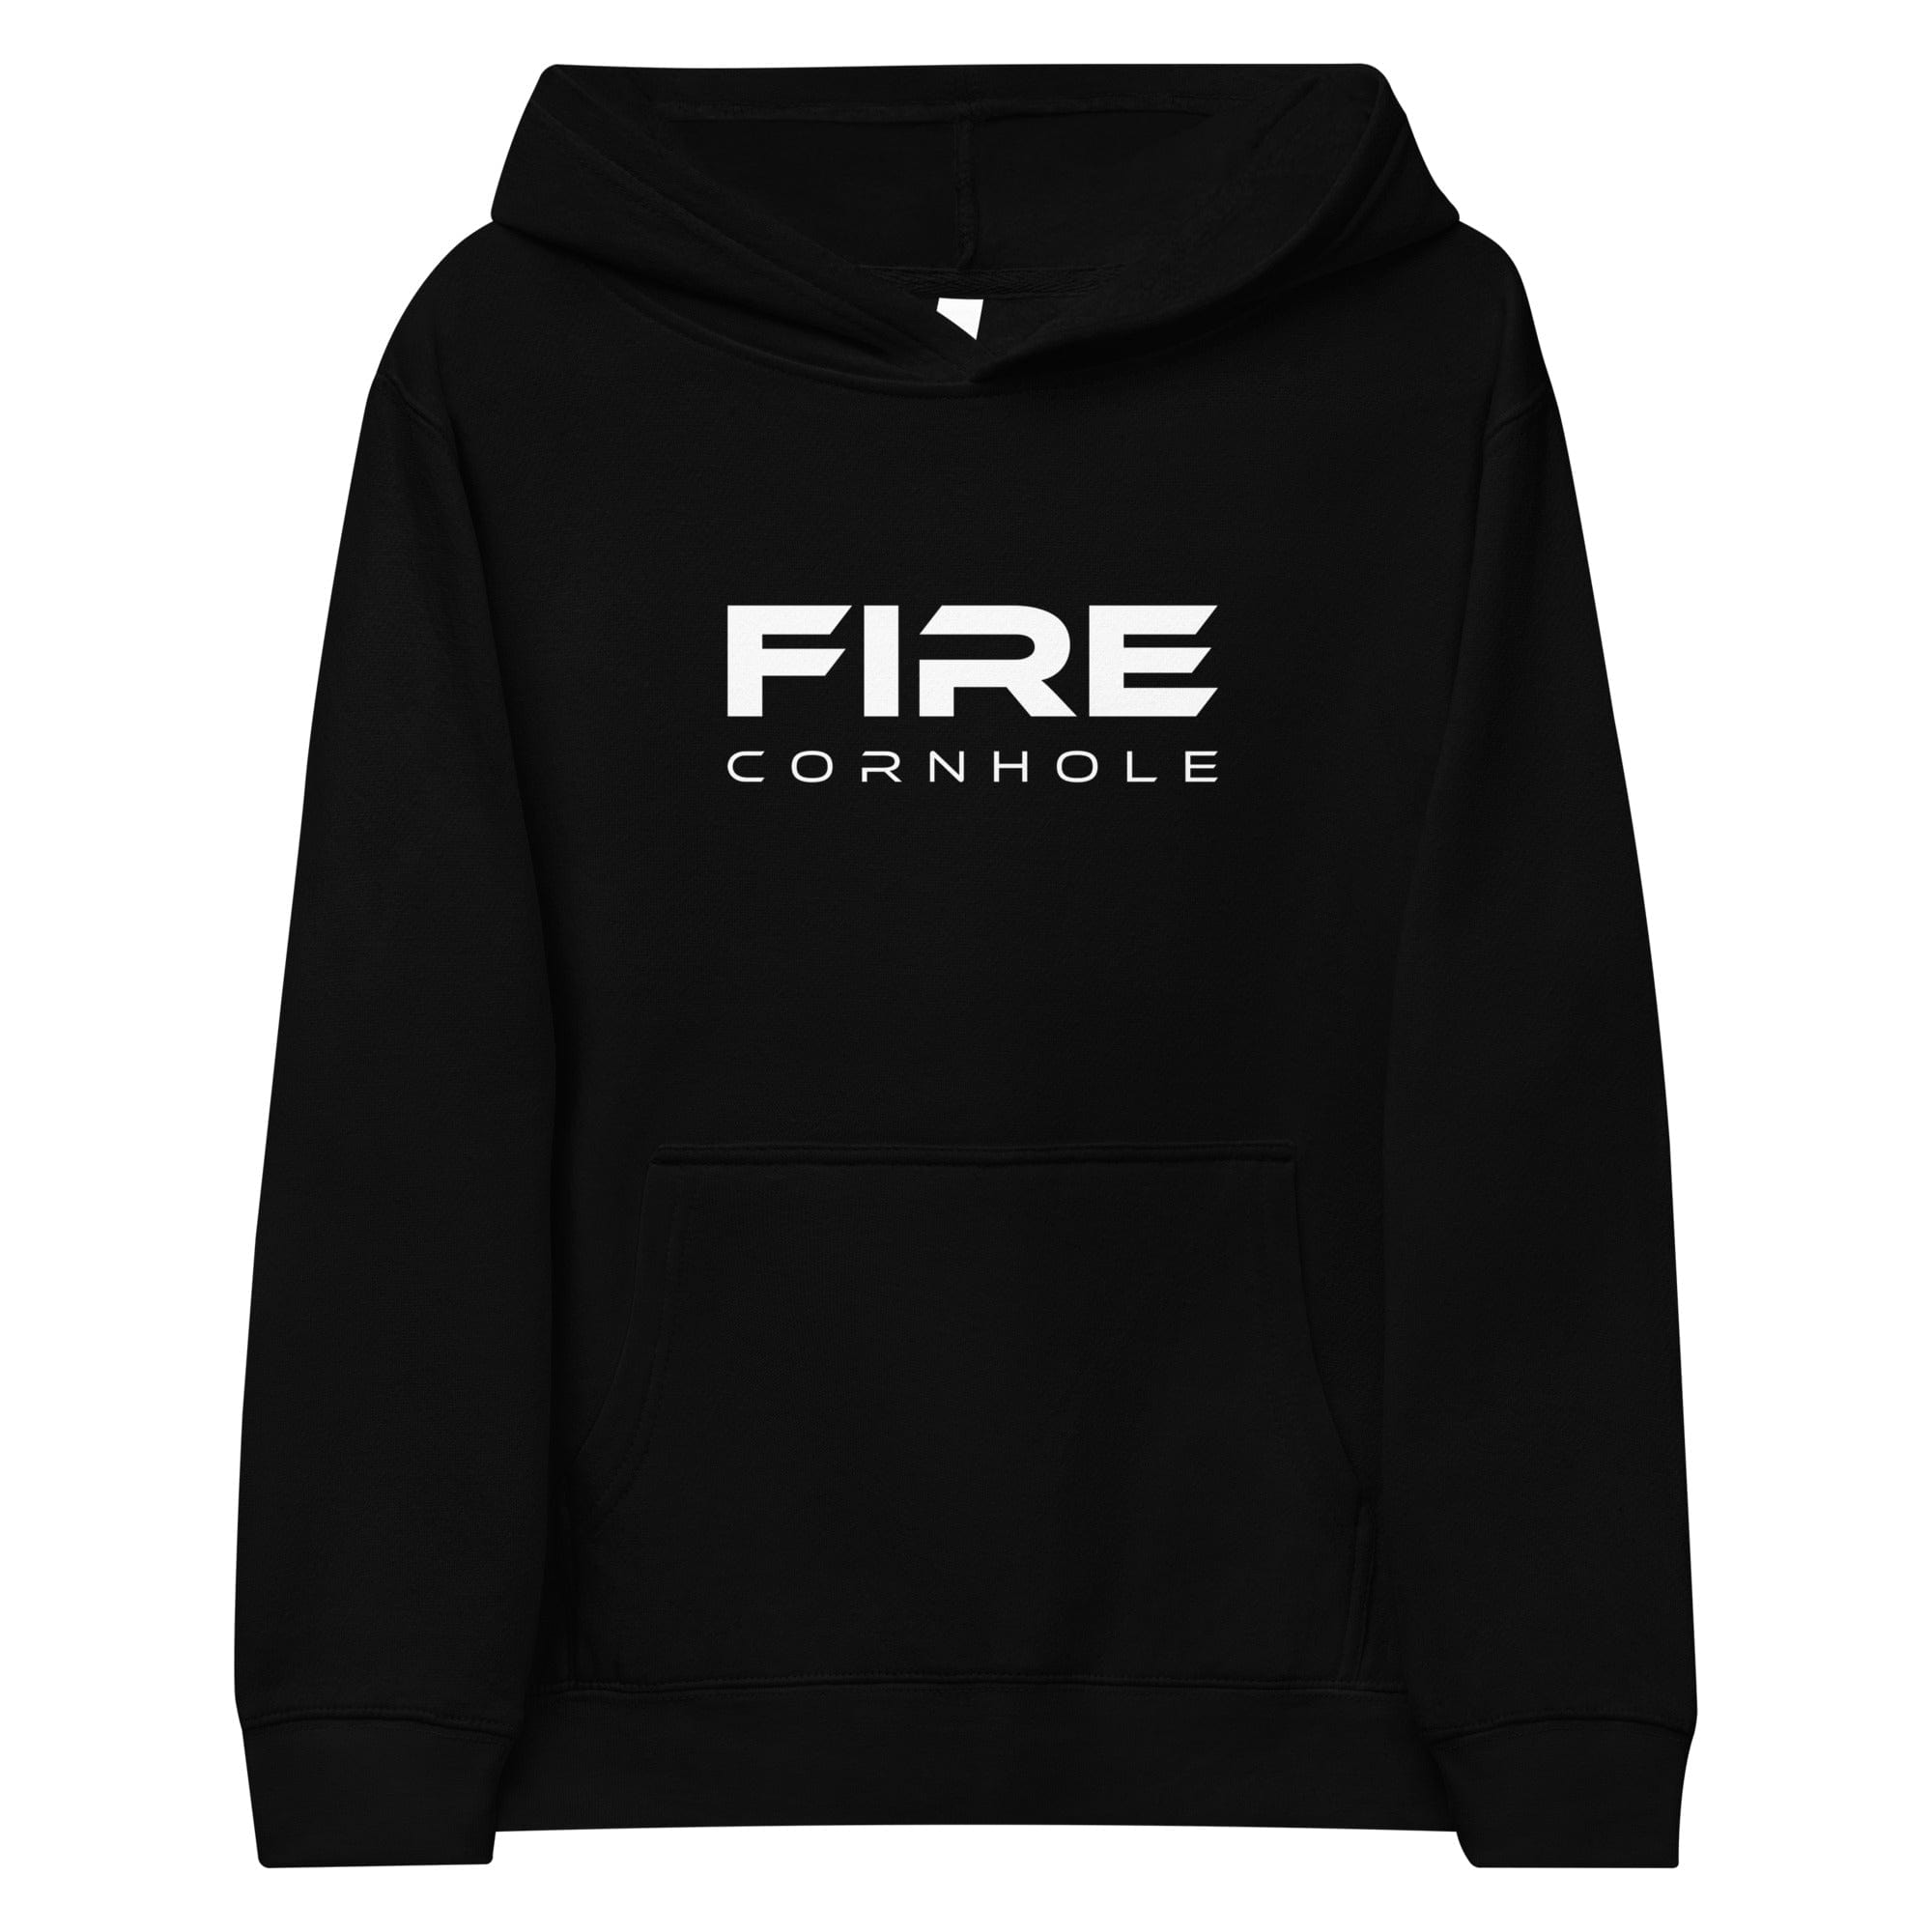 Black kids fleece hoodie with Fire Cornhole logo in white